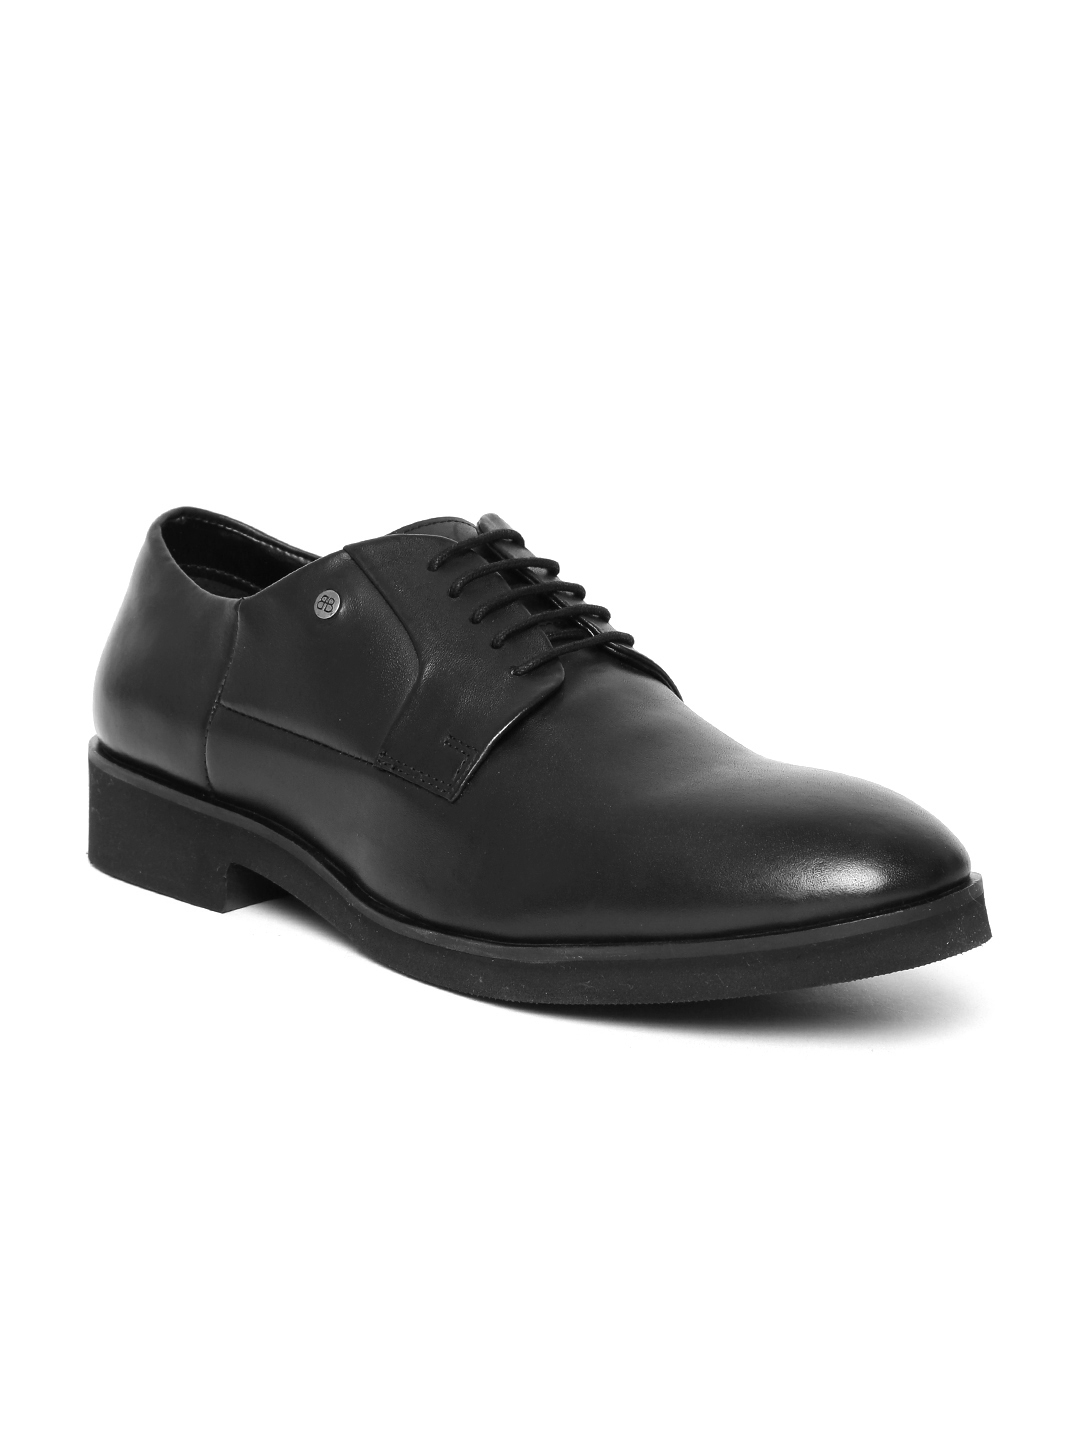 Buy Blackberrys Men Black Leather Formal Derbys - Formal Shoes for Men ...